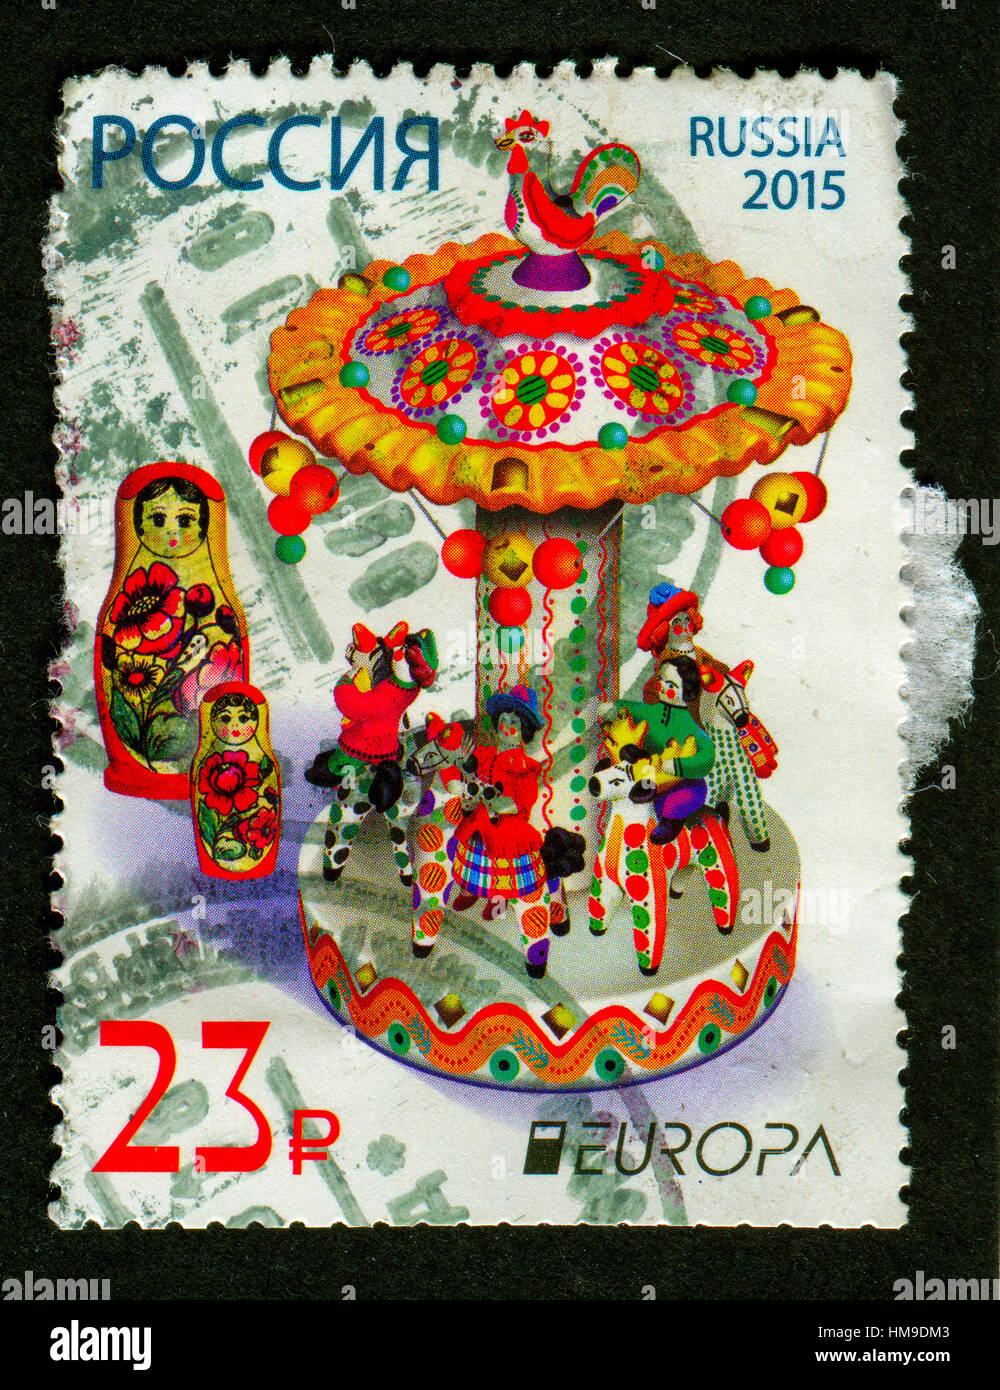 Timbres en Russie montre l'image de la poupée matriochka, aussi connu comme une poupée russe, la nidification est un ensemble de poupées en bois. Banque D'Images